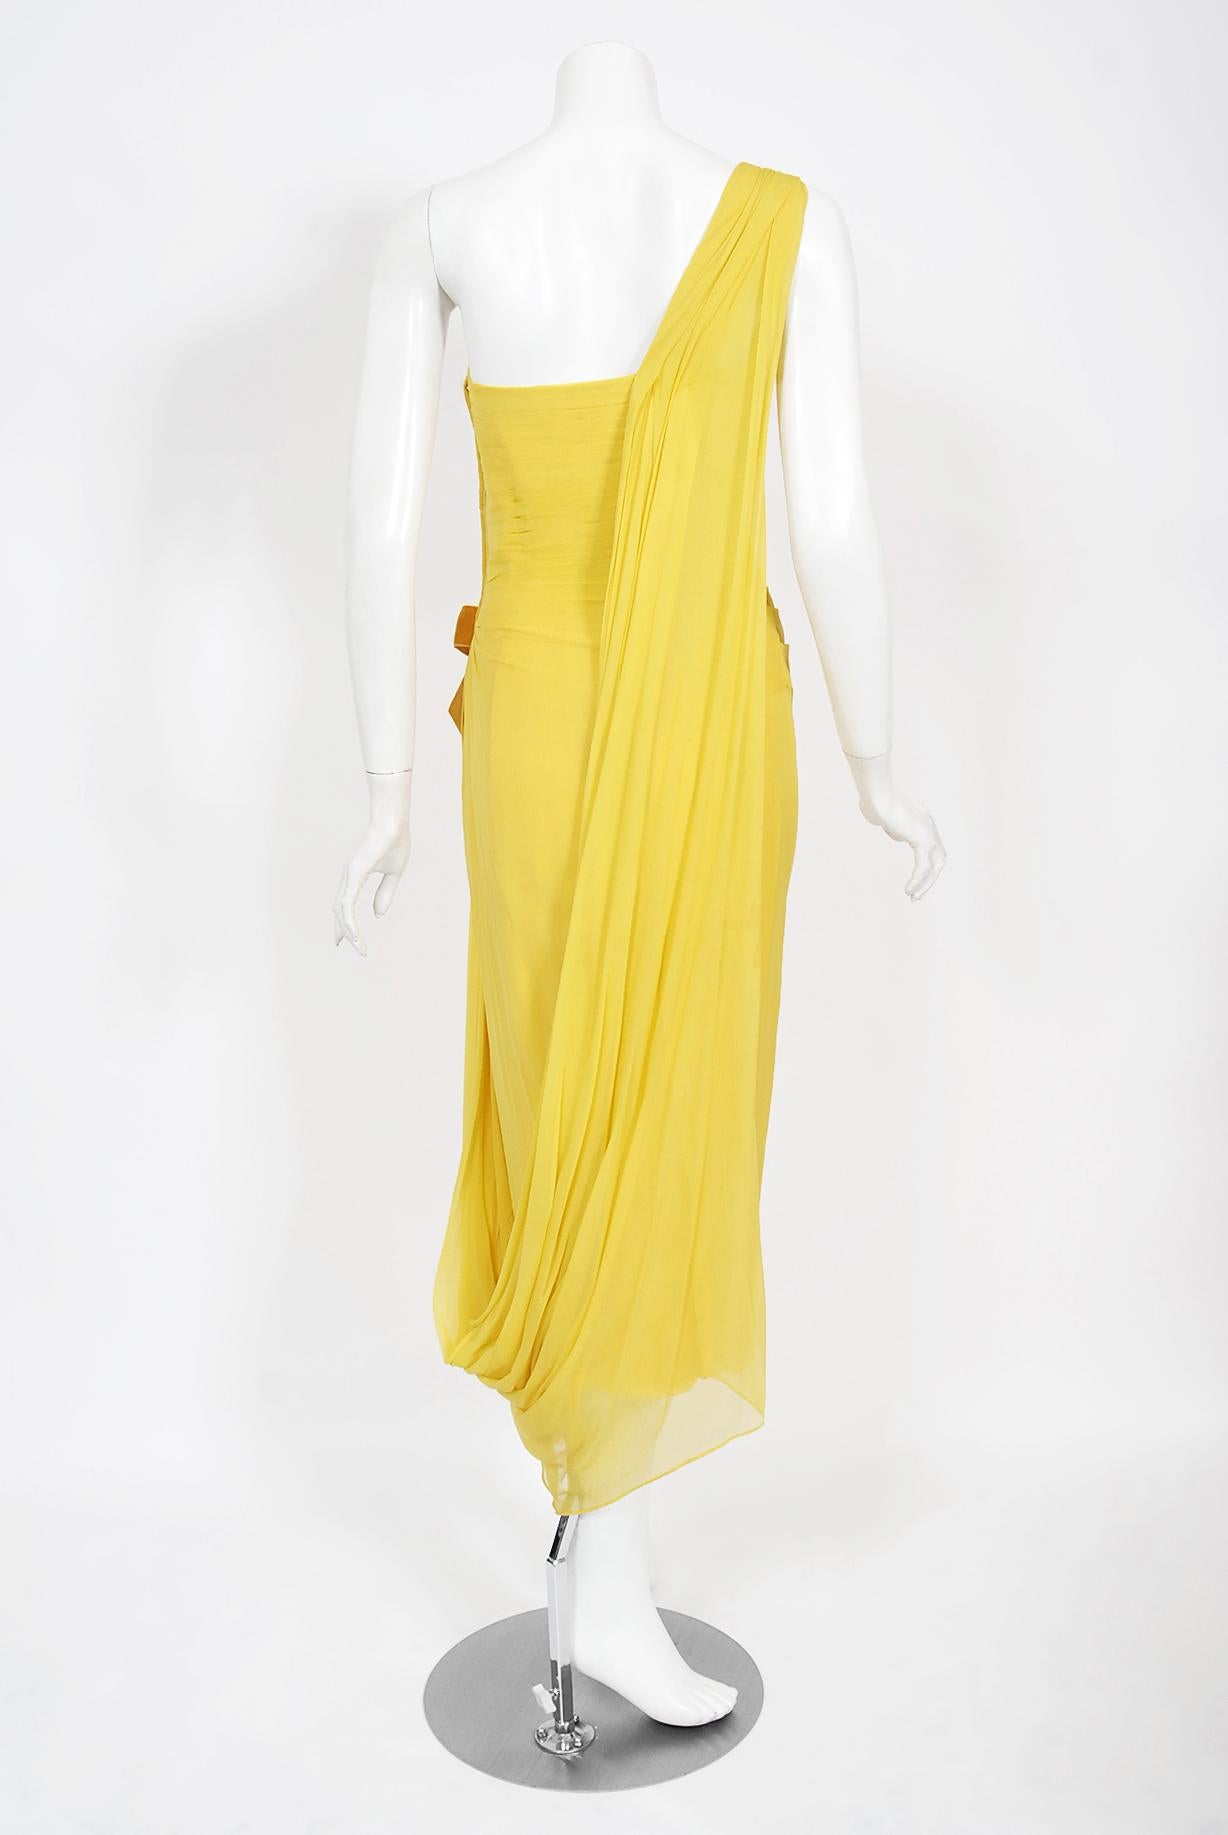 Philip Hulitar - Robe sablier drapée en mousseline de soie plissée jaune, vintage, années 1950 en vente 8